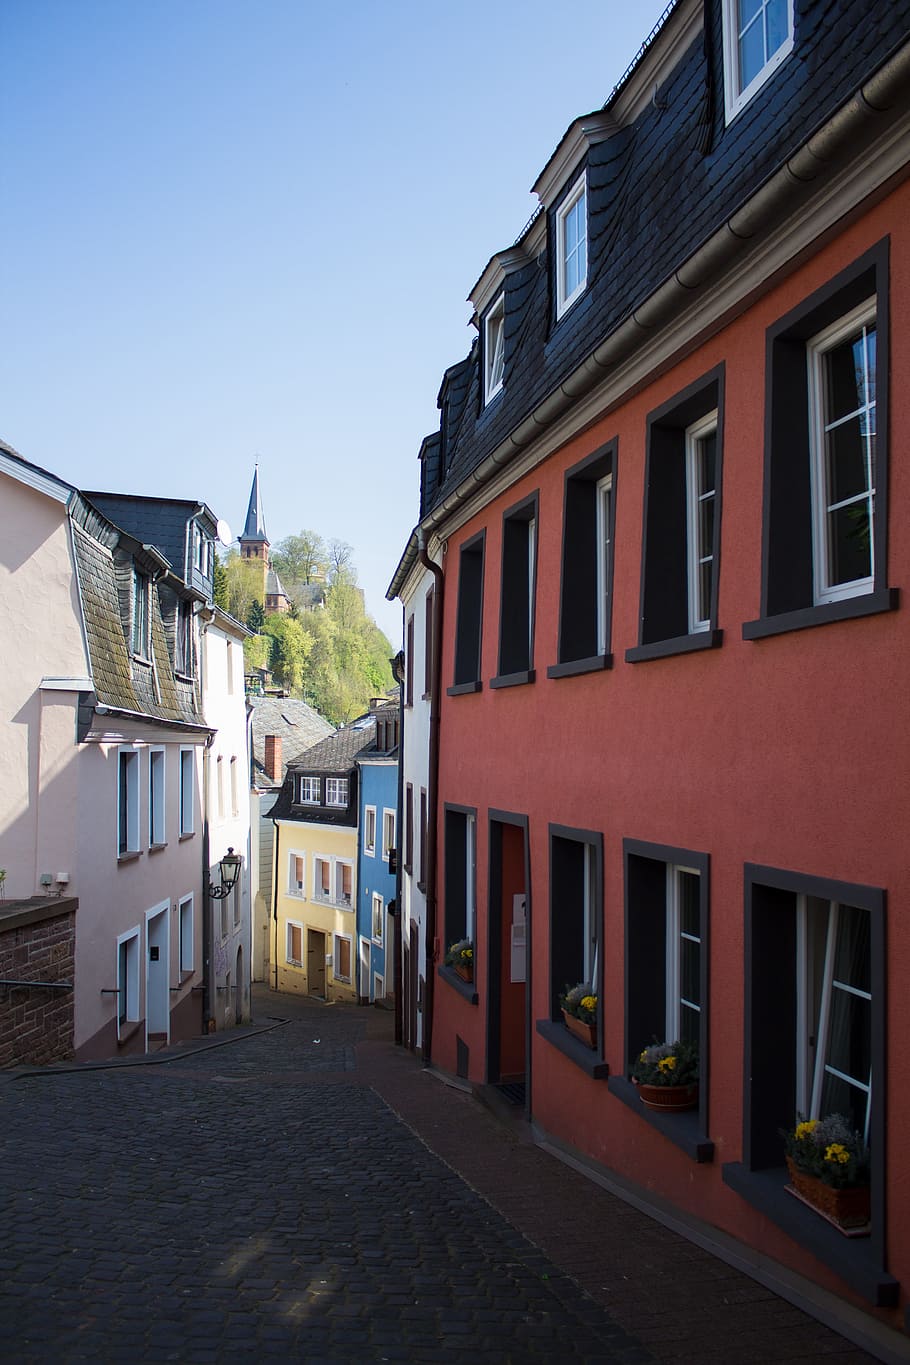 Saarburg, Saarland, Kota, rumah, kota tua, bangunan, arsitektur, atap, rumah bersejarah, perjalanan